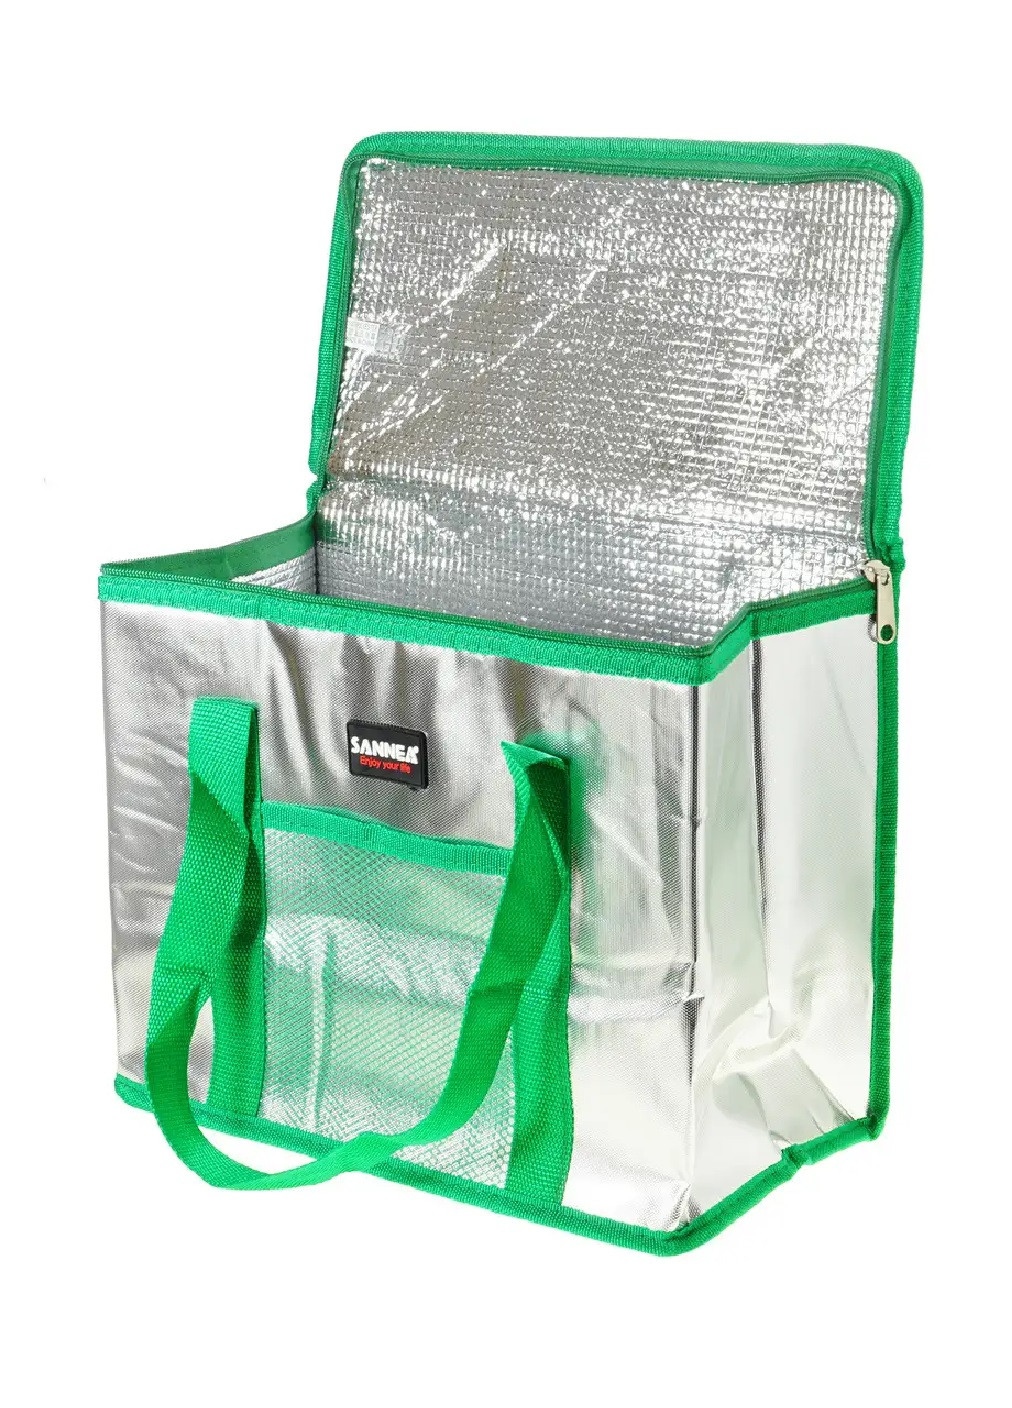 Термосумка сумка холодильник изотермическая термоизоляция для похода пикника плжа дачи на 16 л 33х17х28 см (474452-Prob) Зеленая Unbranded (258486596)